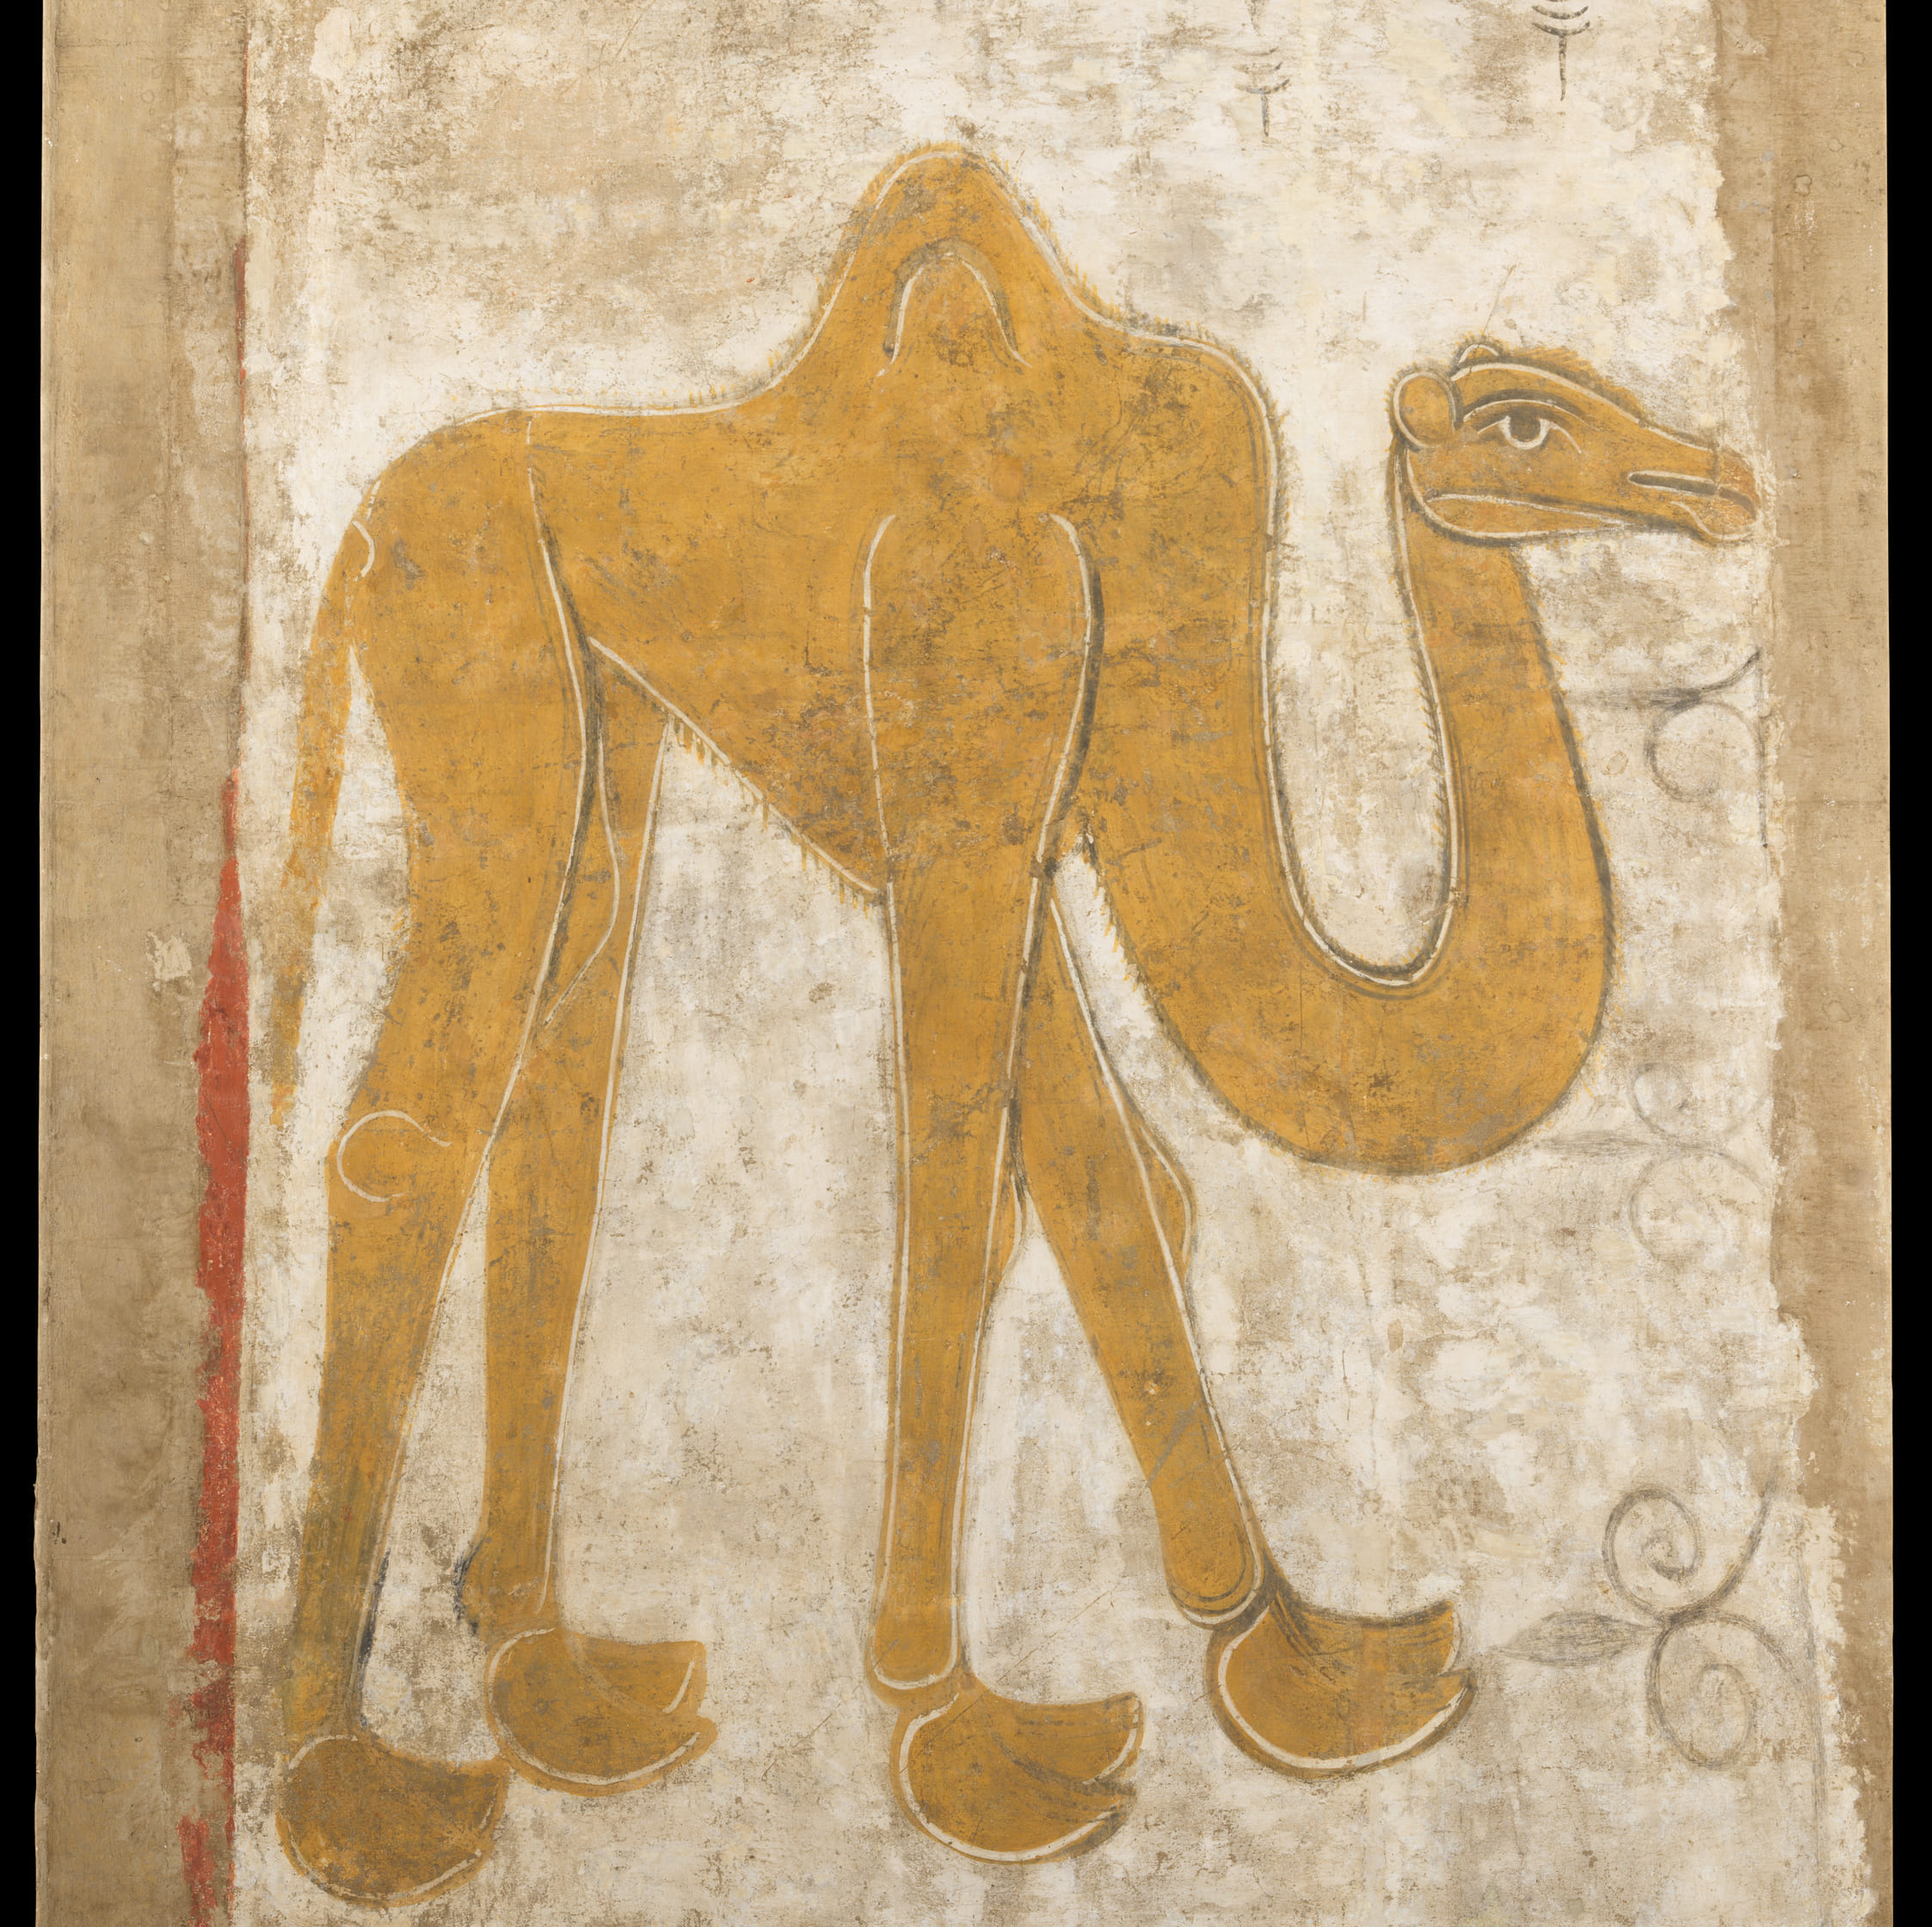 メトロポリタン美術館に収蔵されている12世紀初頭に描かれたとされるラクダの絵